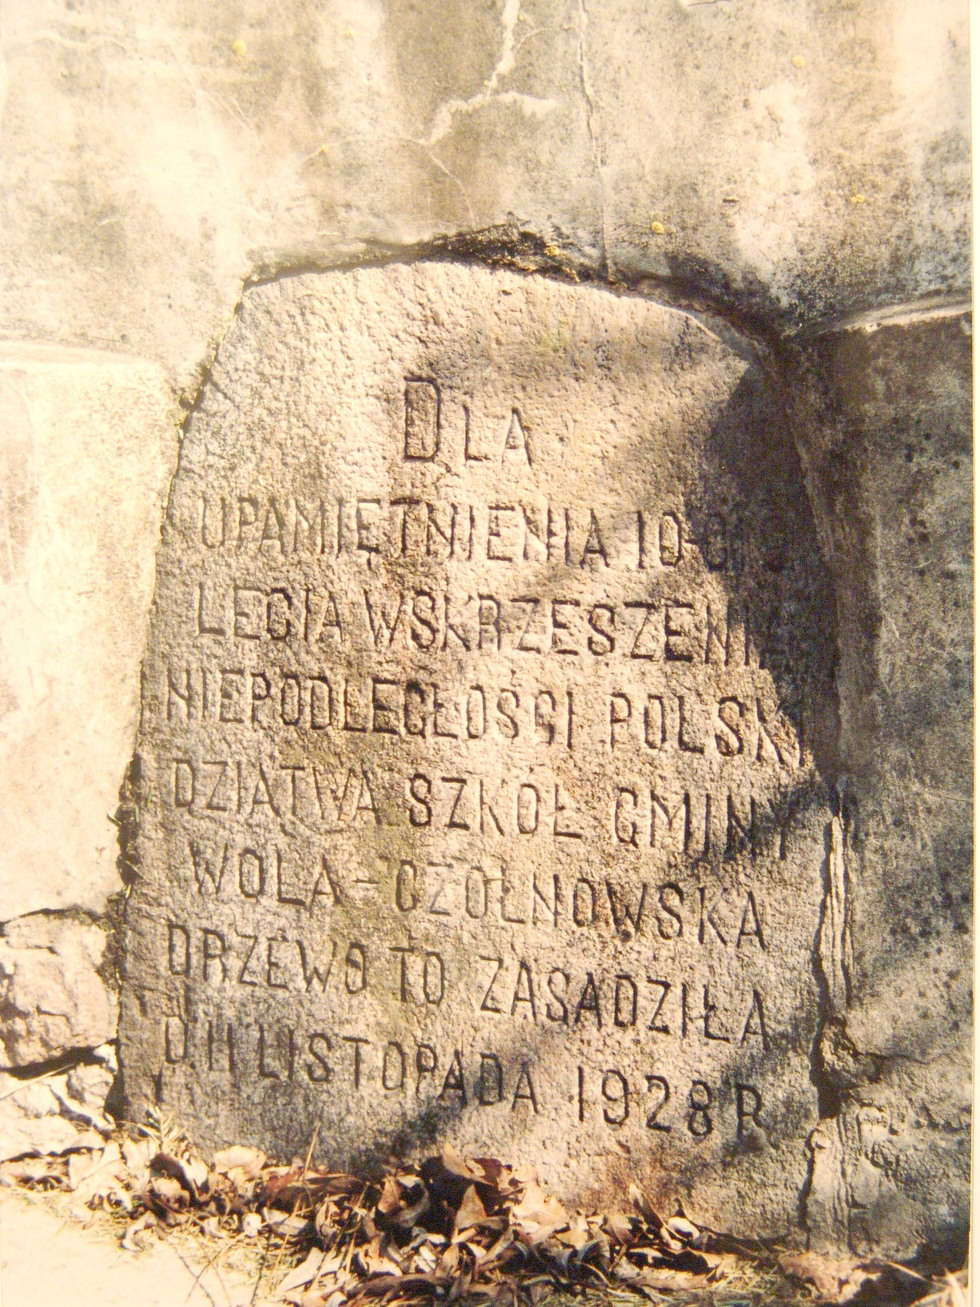  <p>Pamiątkowy kamień umieszczony w cokole pomnika - 2005 r.&nbsp;</p>
<p>&nbsp;</p>